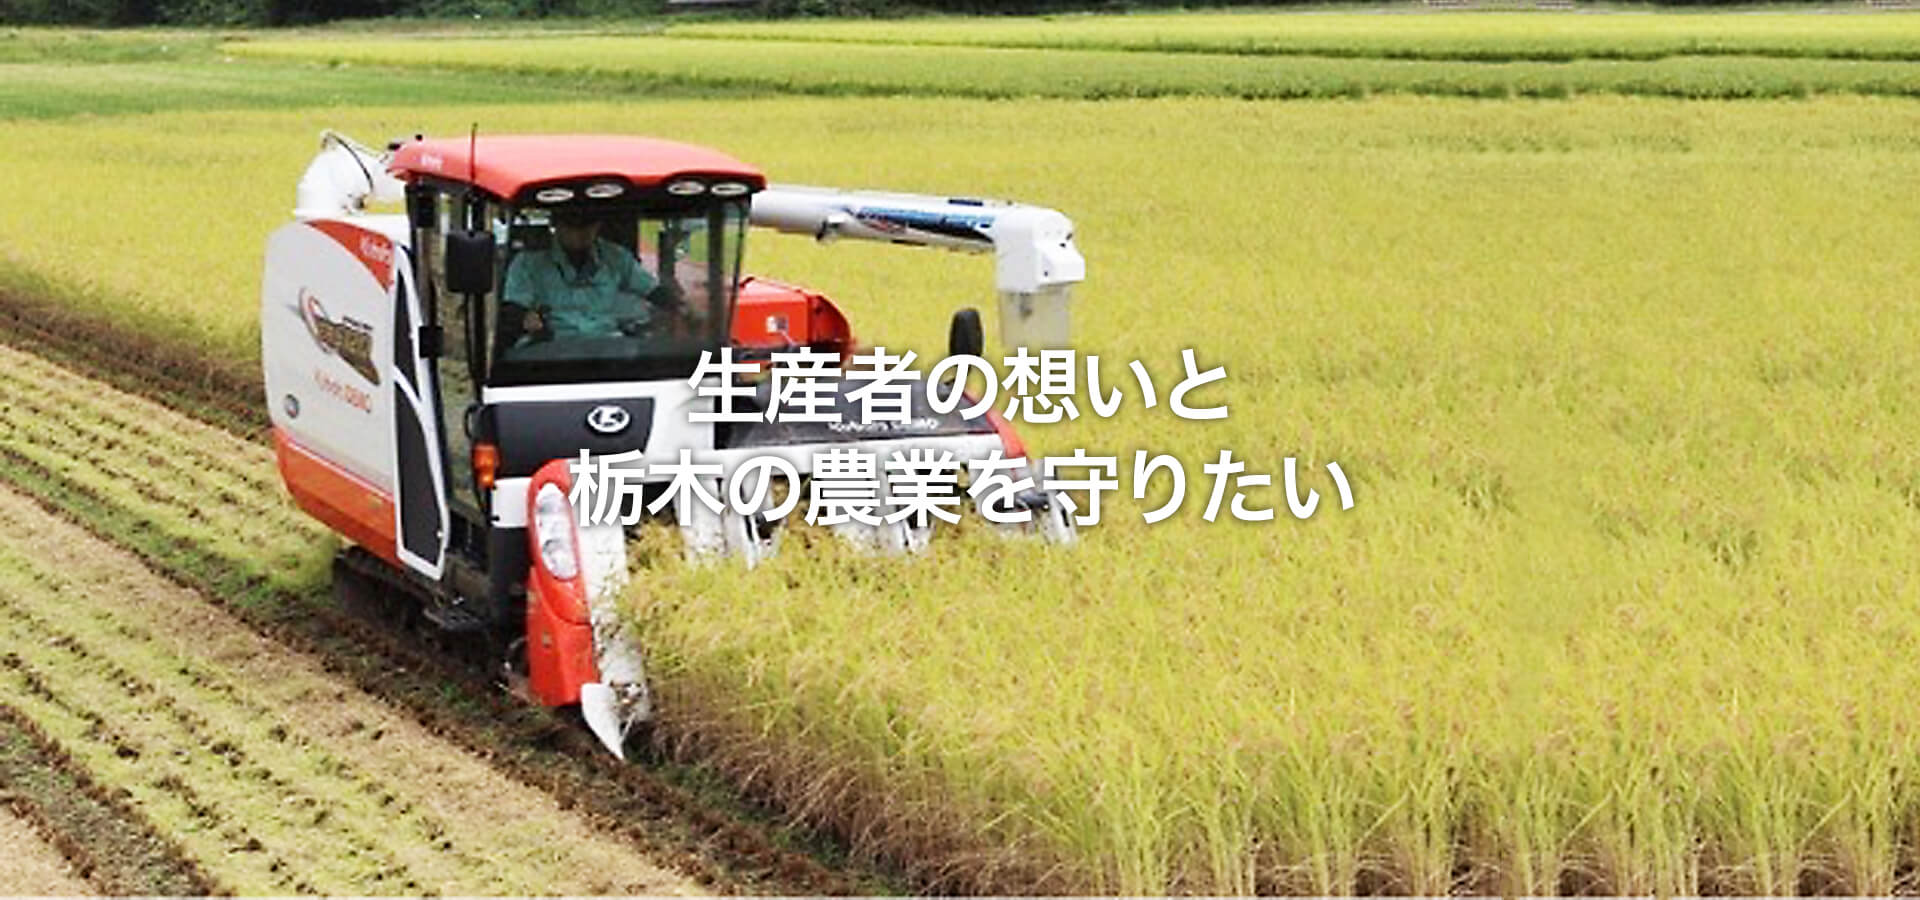 生産者の想いと栃木の農業を守りたい